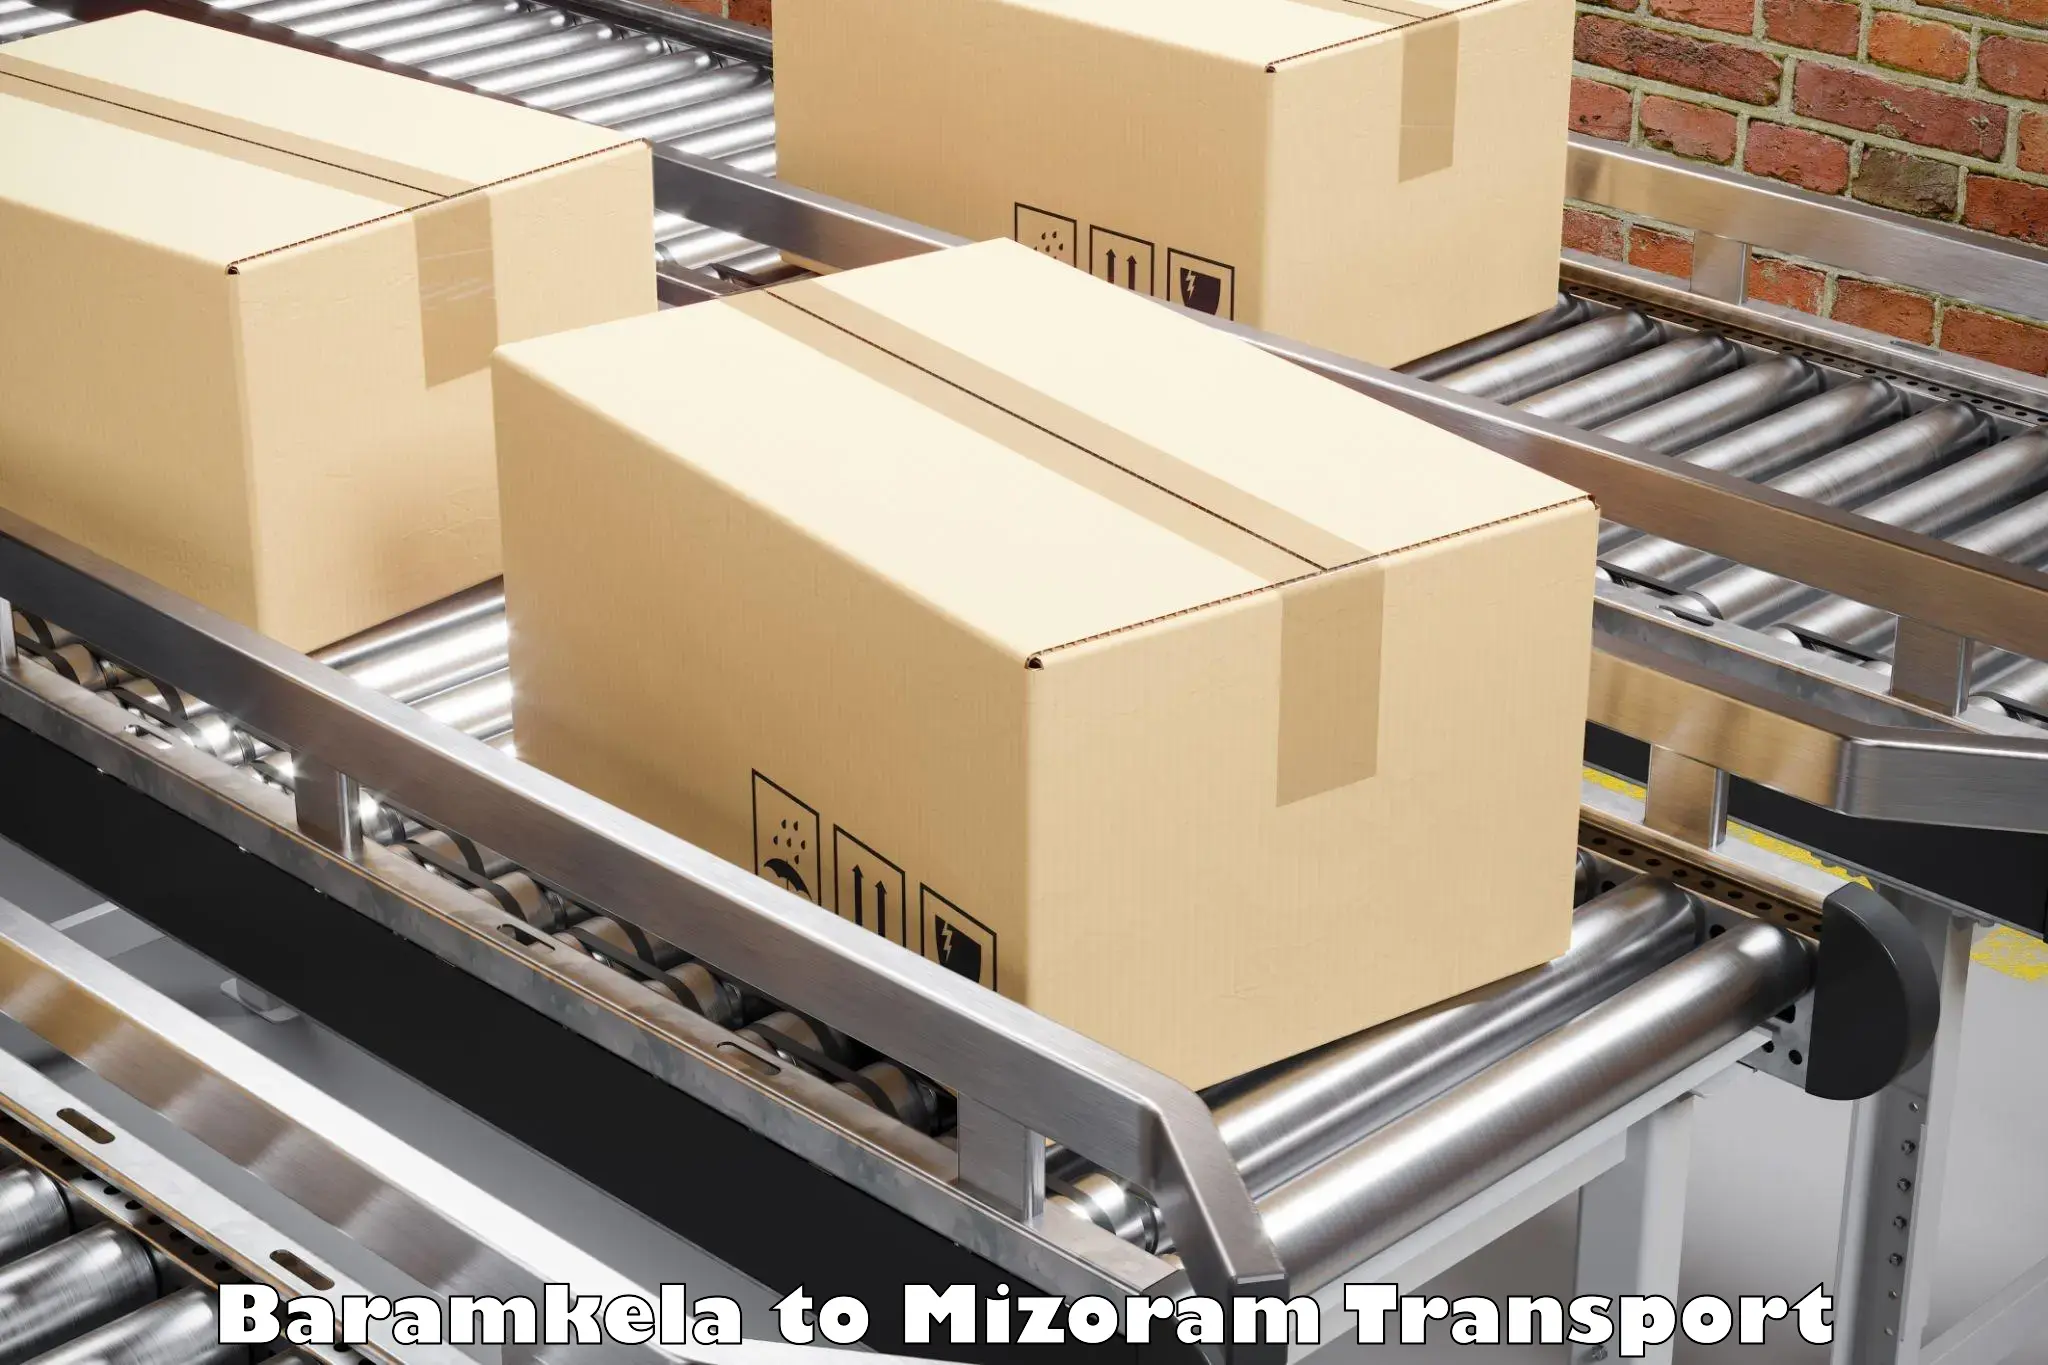 Daily parcel service transport in Baramkela to Mizoram